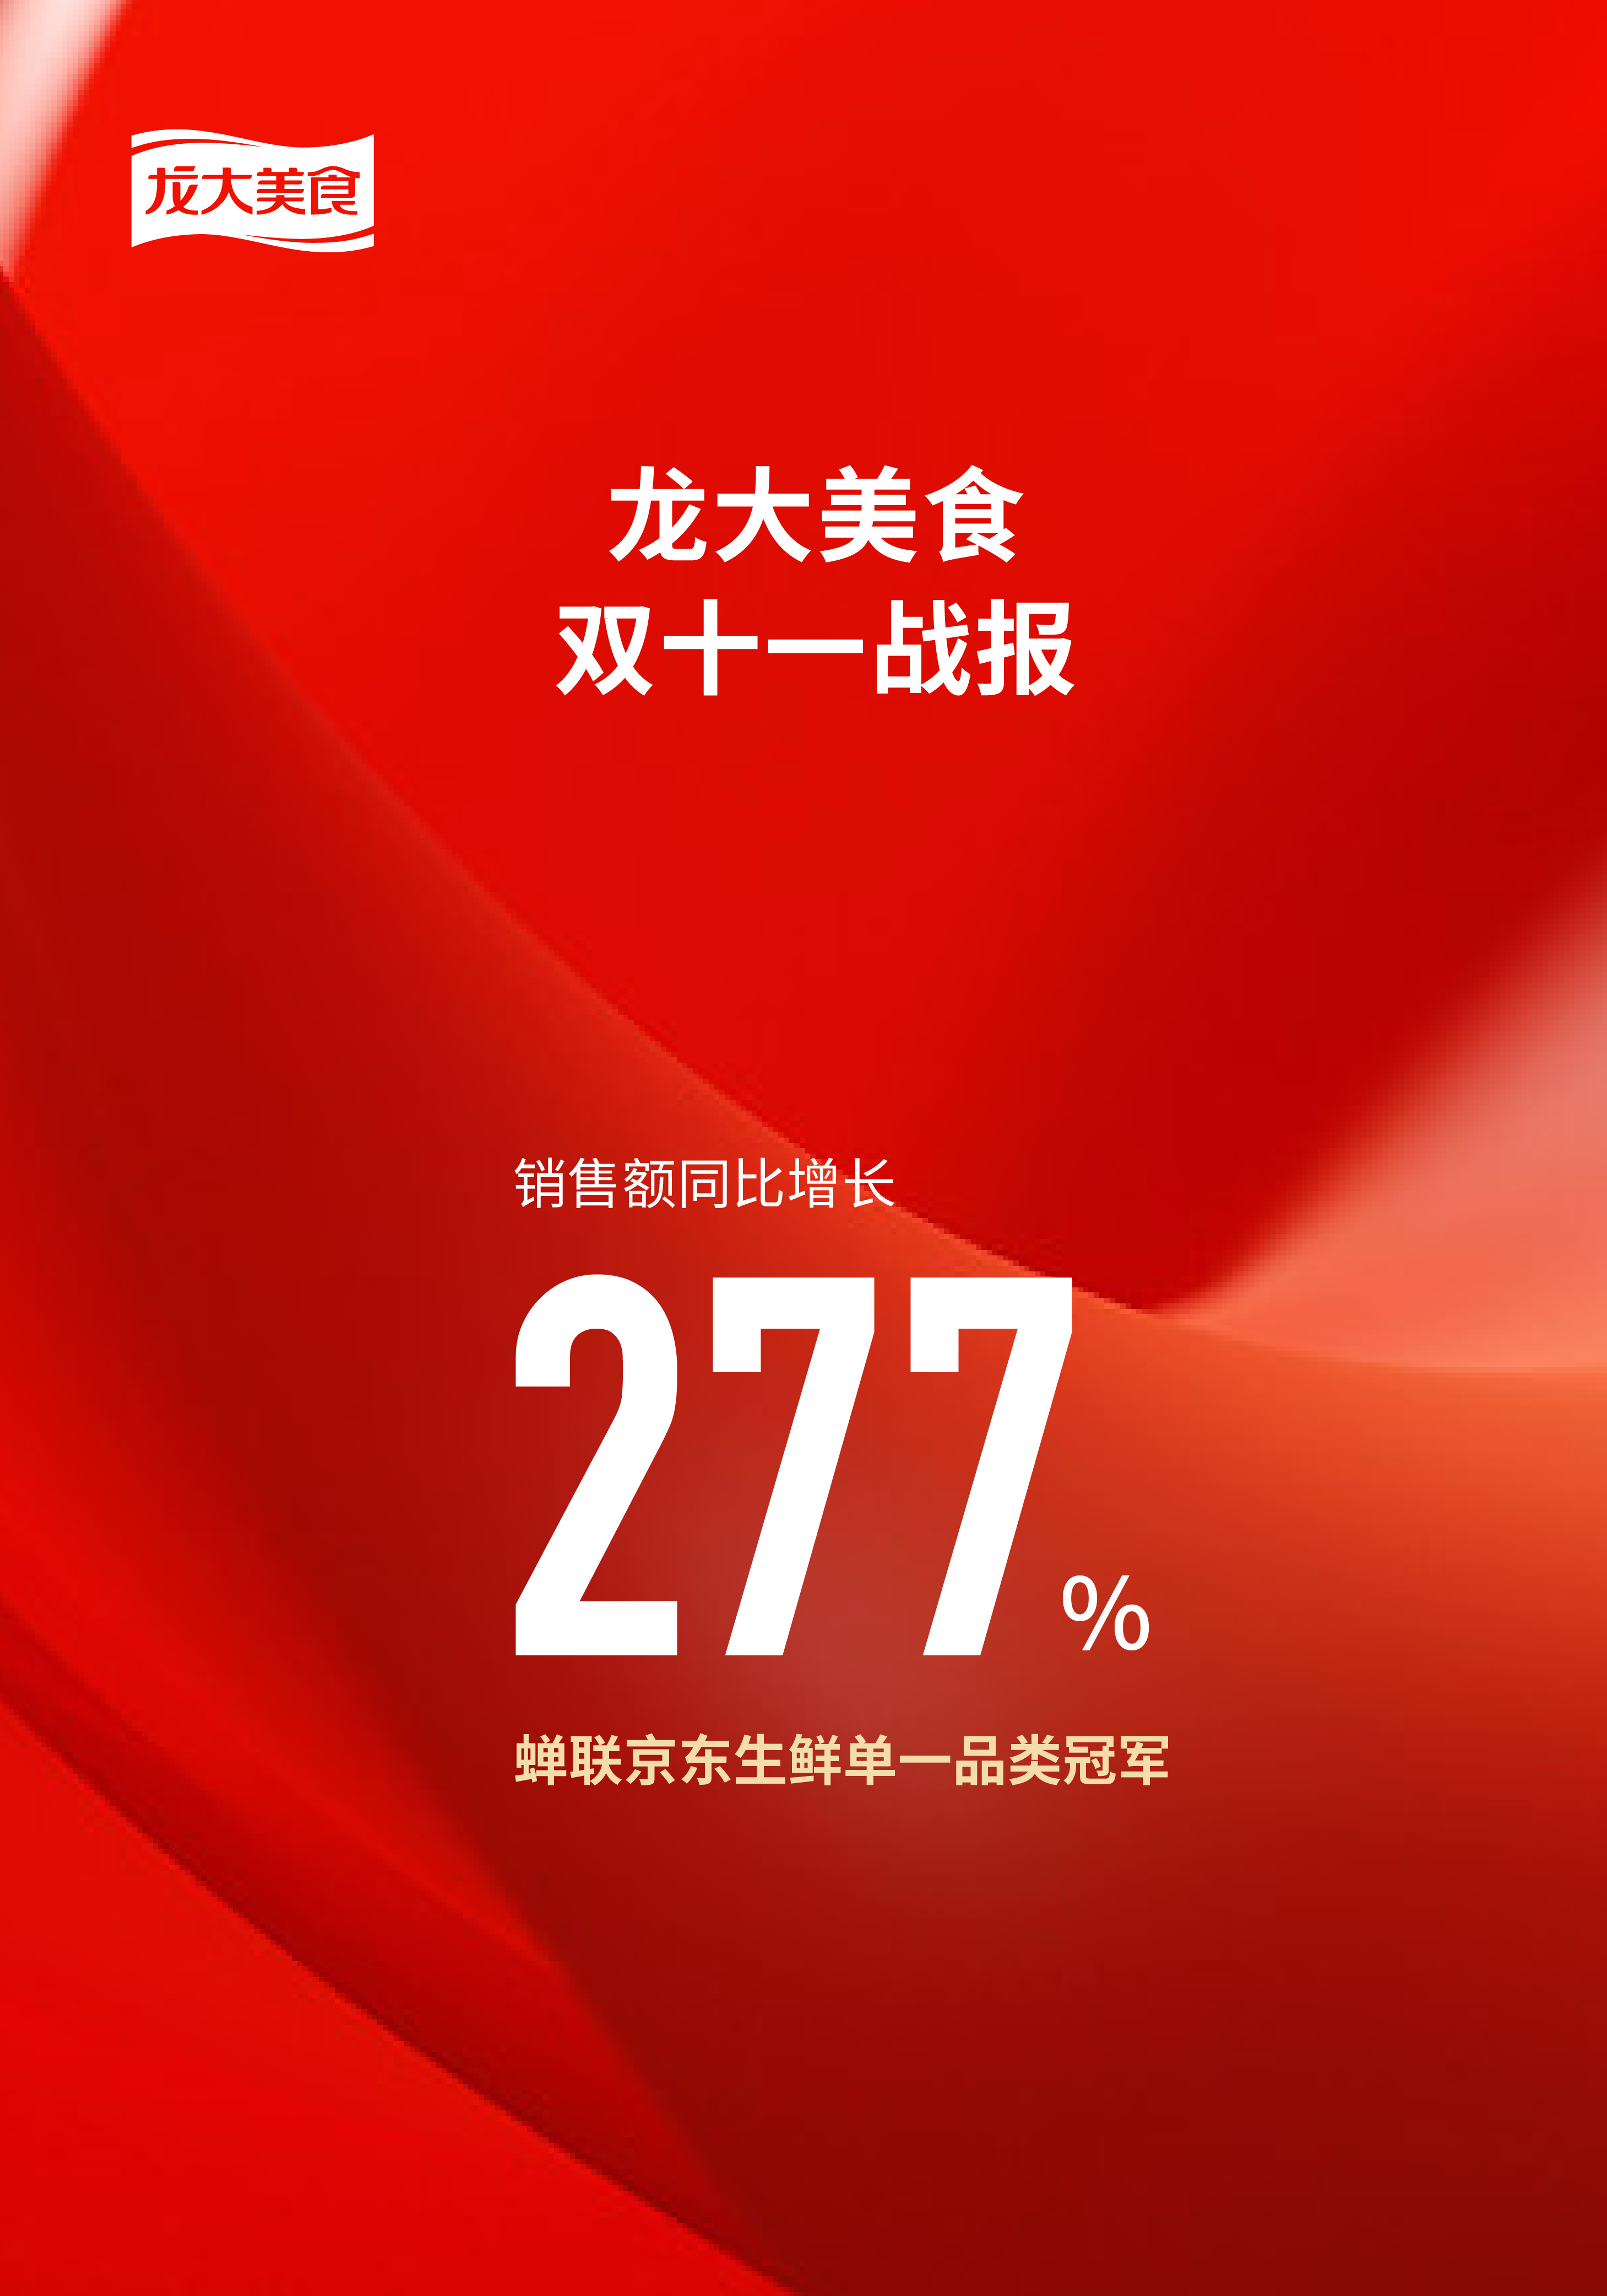 龙大美食双十一战报：销售额同比增长277%，蝉联京东生鲜单一品类冠军